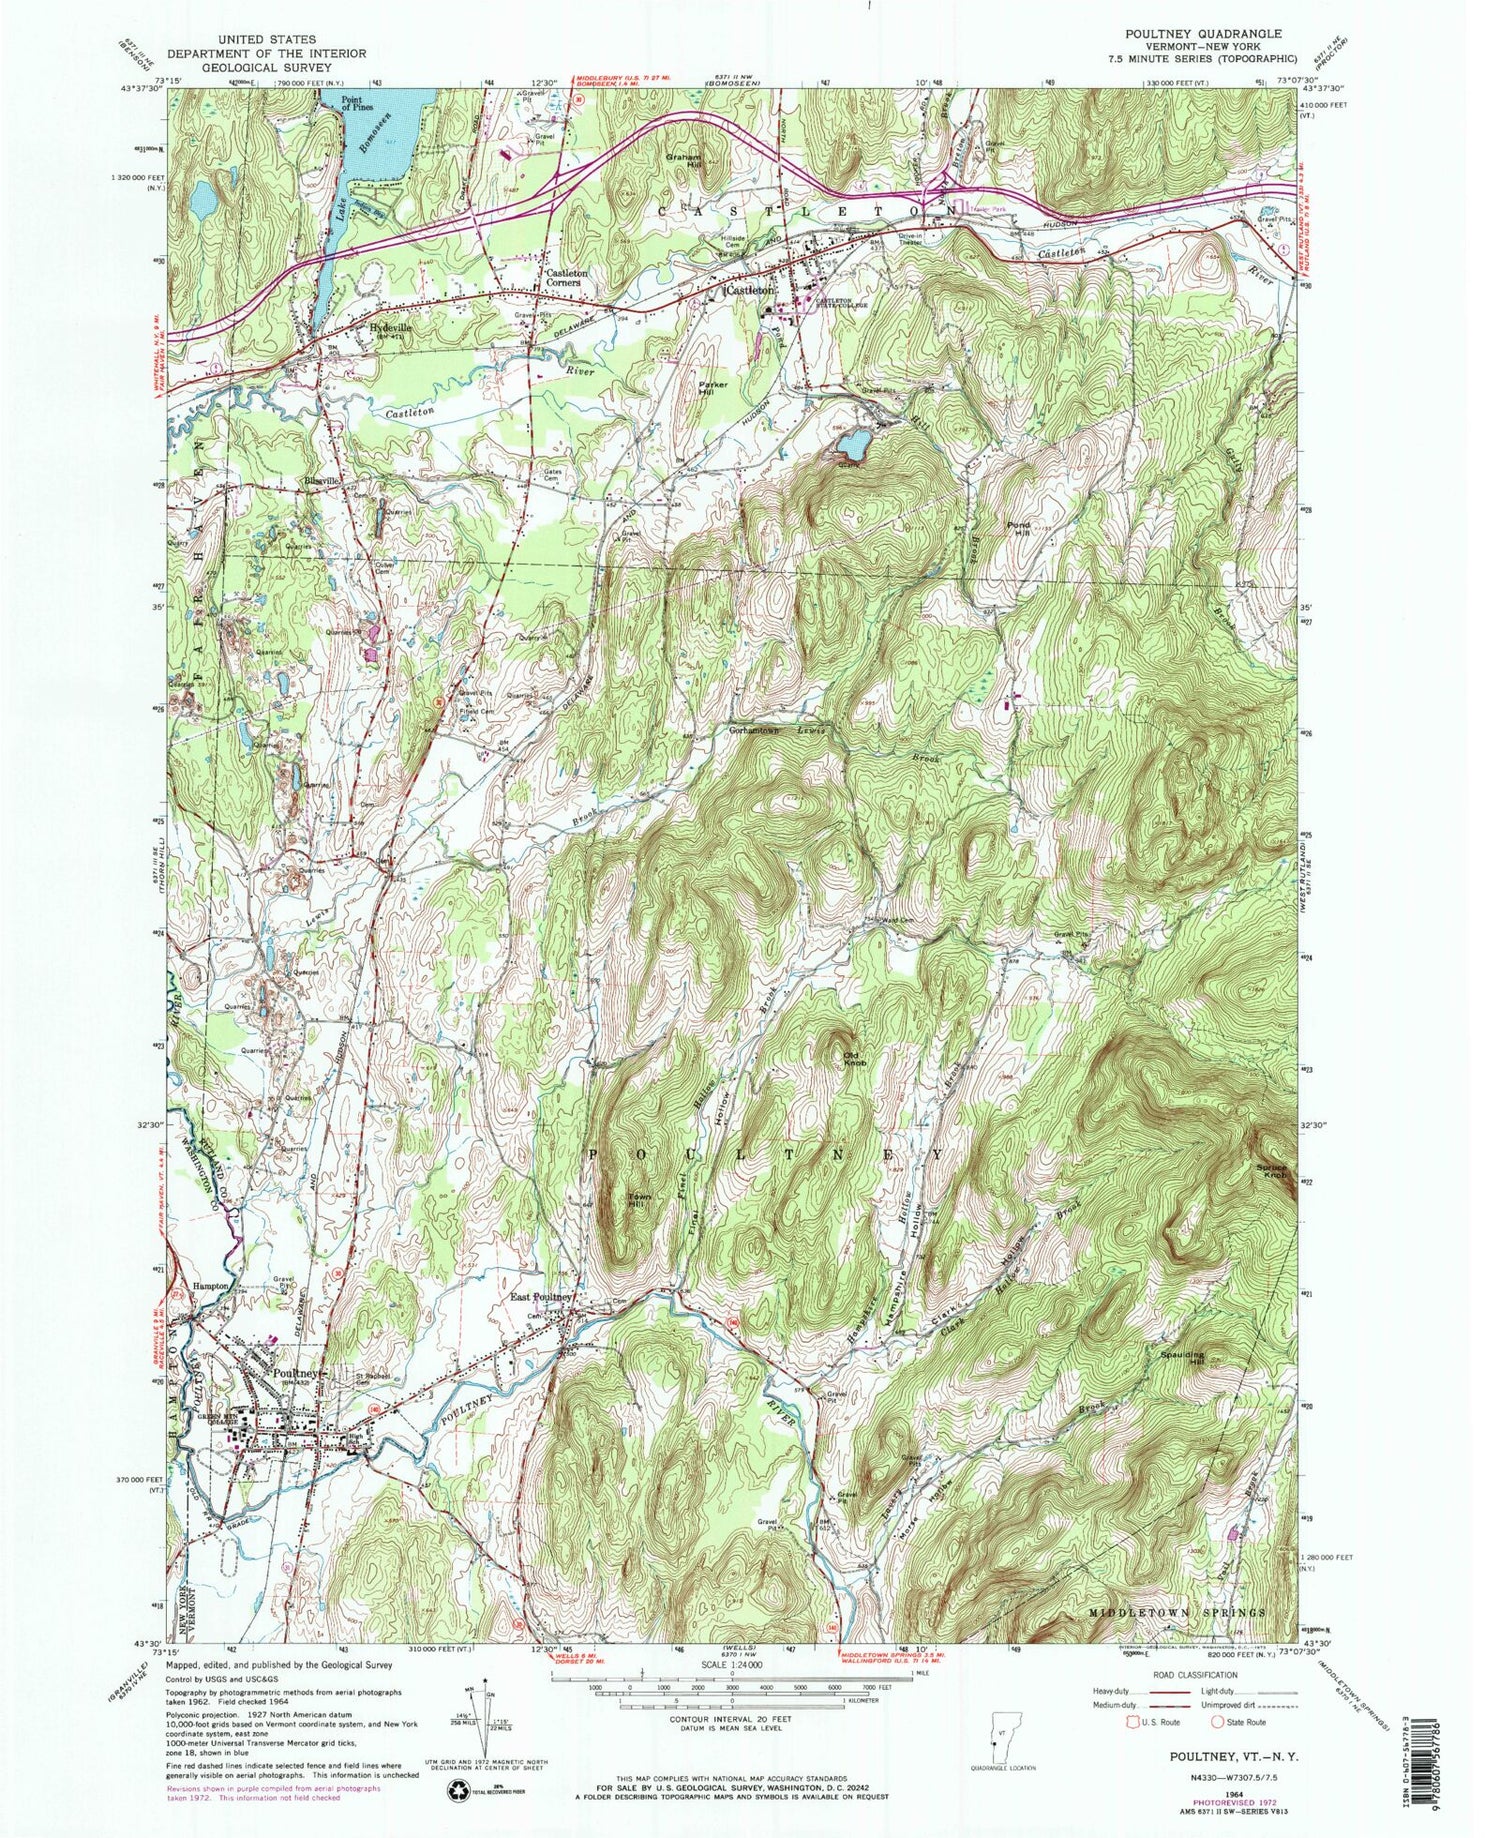 Classic USGS Poultney Vermont 7.5'x7.5' Topo Map Image